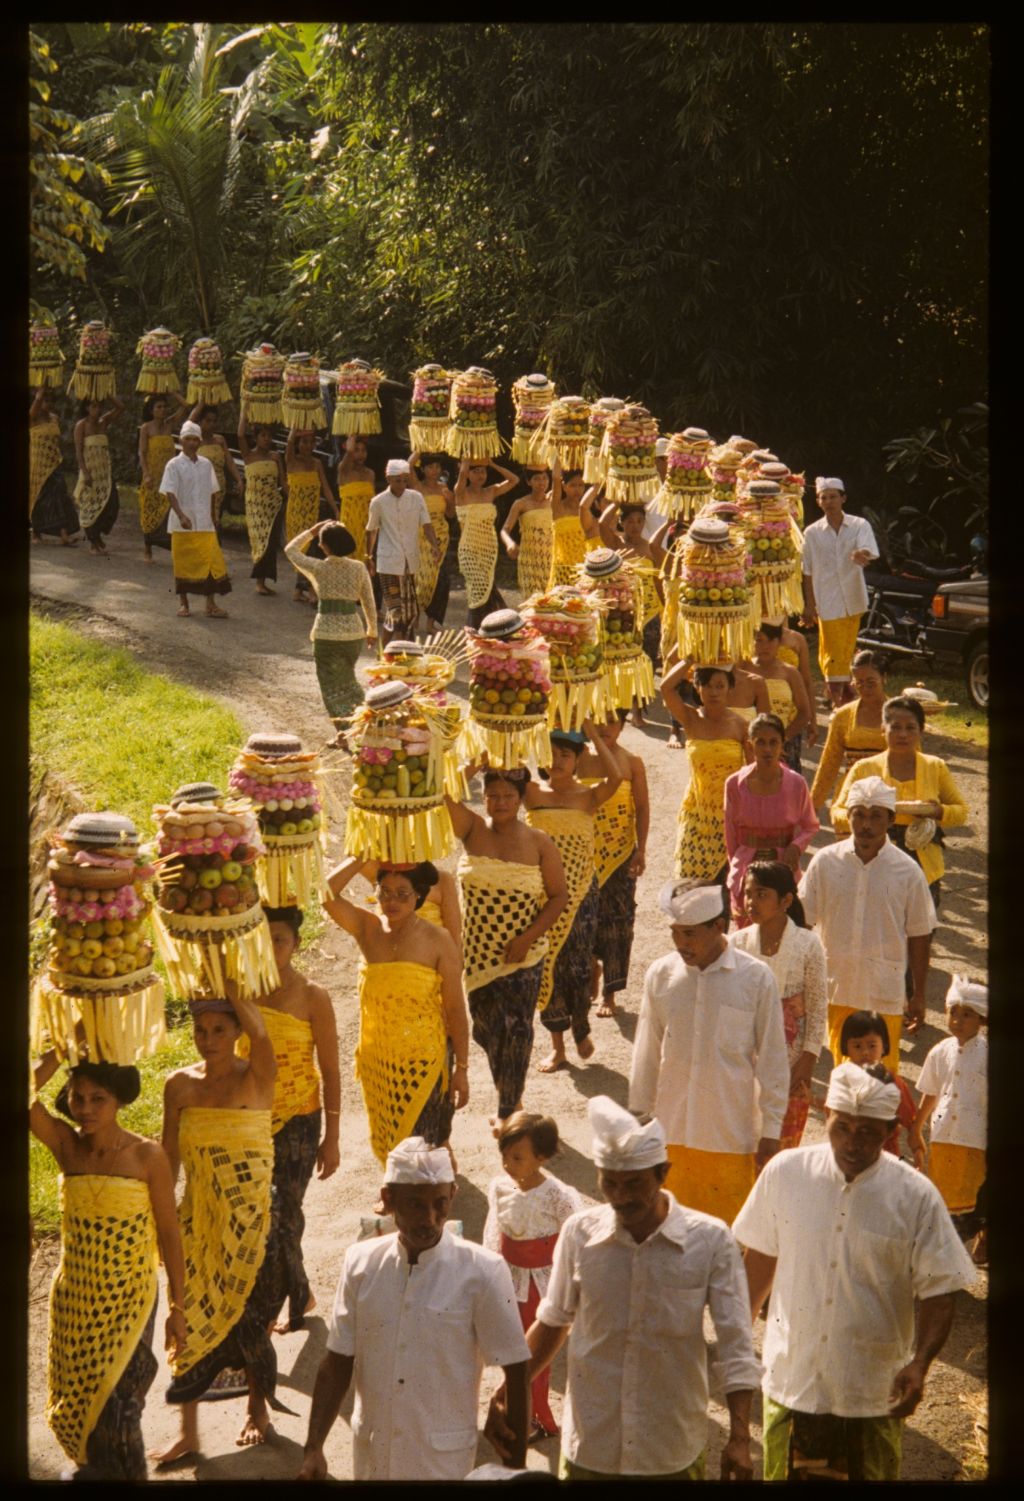 Eine lange Reihe von Frauen gehen in einen Tempel. Sie sind gelb gekleidet und tragen volle Körbe auf den Köpfen